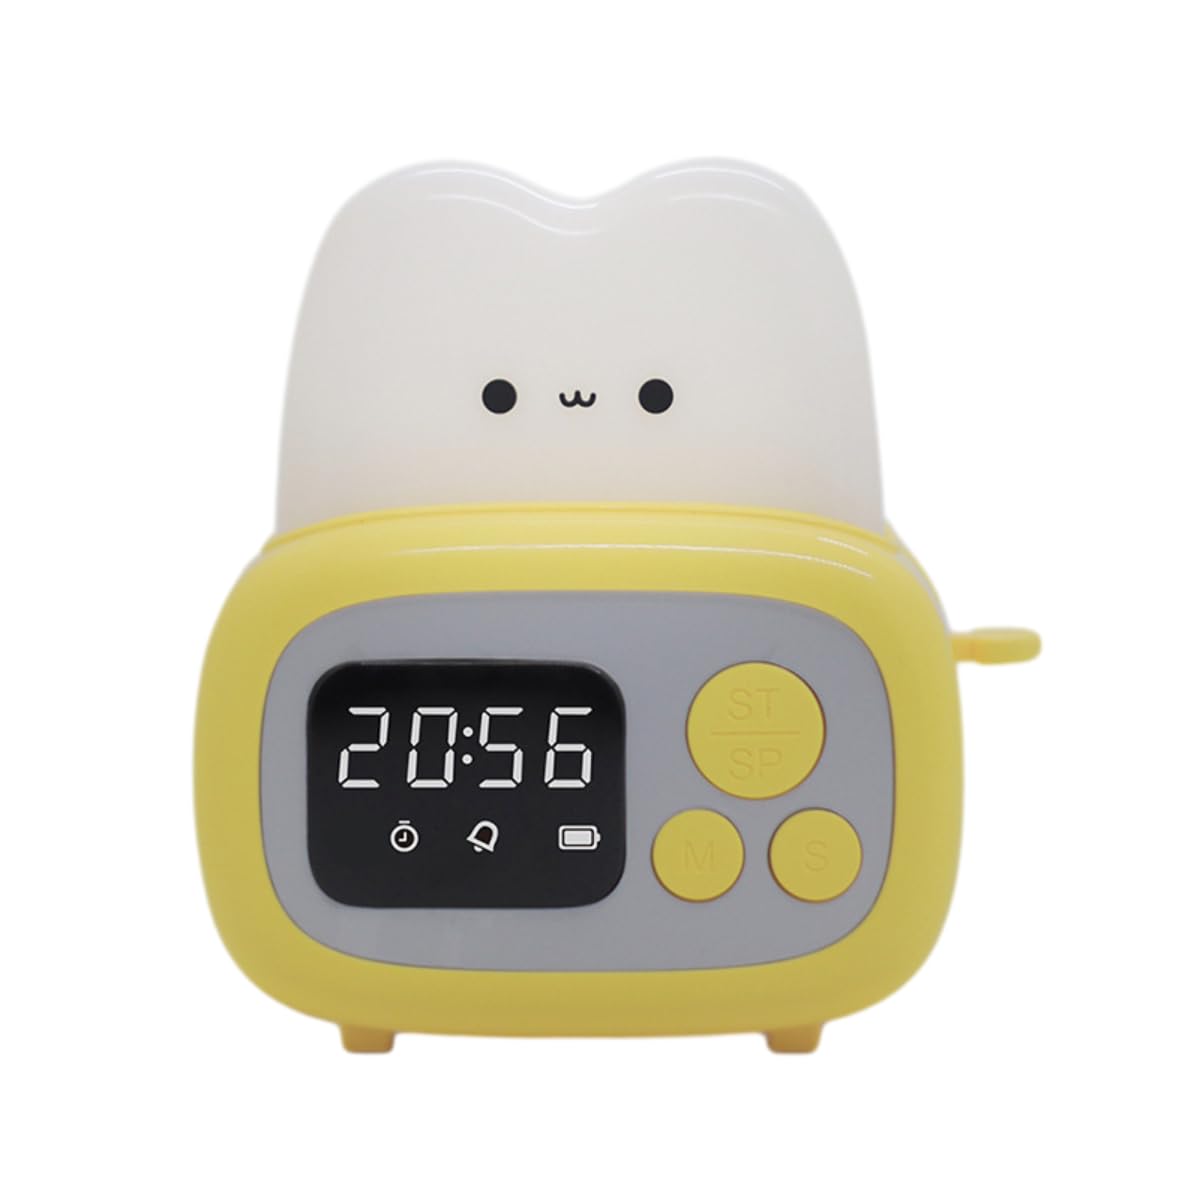 かわいいトースターランプ LED表示アラームクロック 置き時計 デジタルタイマー USB充電 子供用 面白い寝室 ベッドサイド睡眠ランプ 誕生日プレゼント 子供 赤ちゃん 女の子 ティーン用 スリープランプ かわいいパンライト 部屋の装飾 (イエロー)